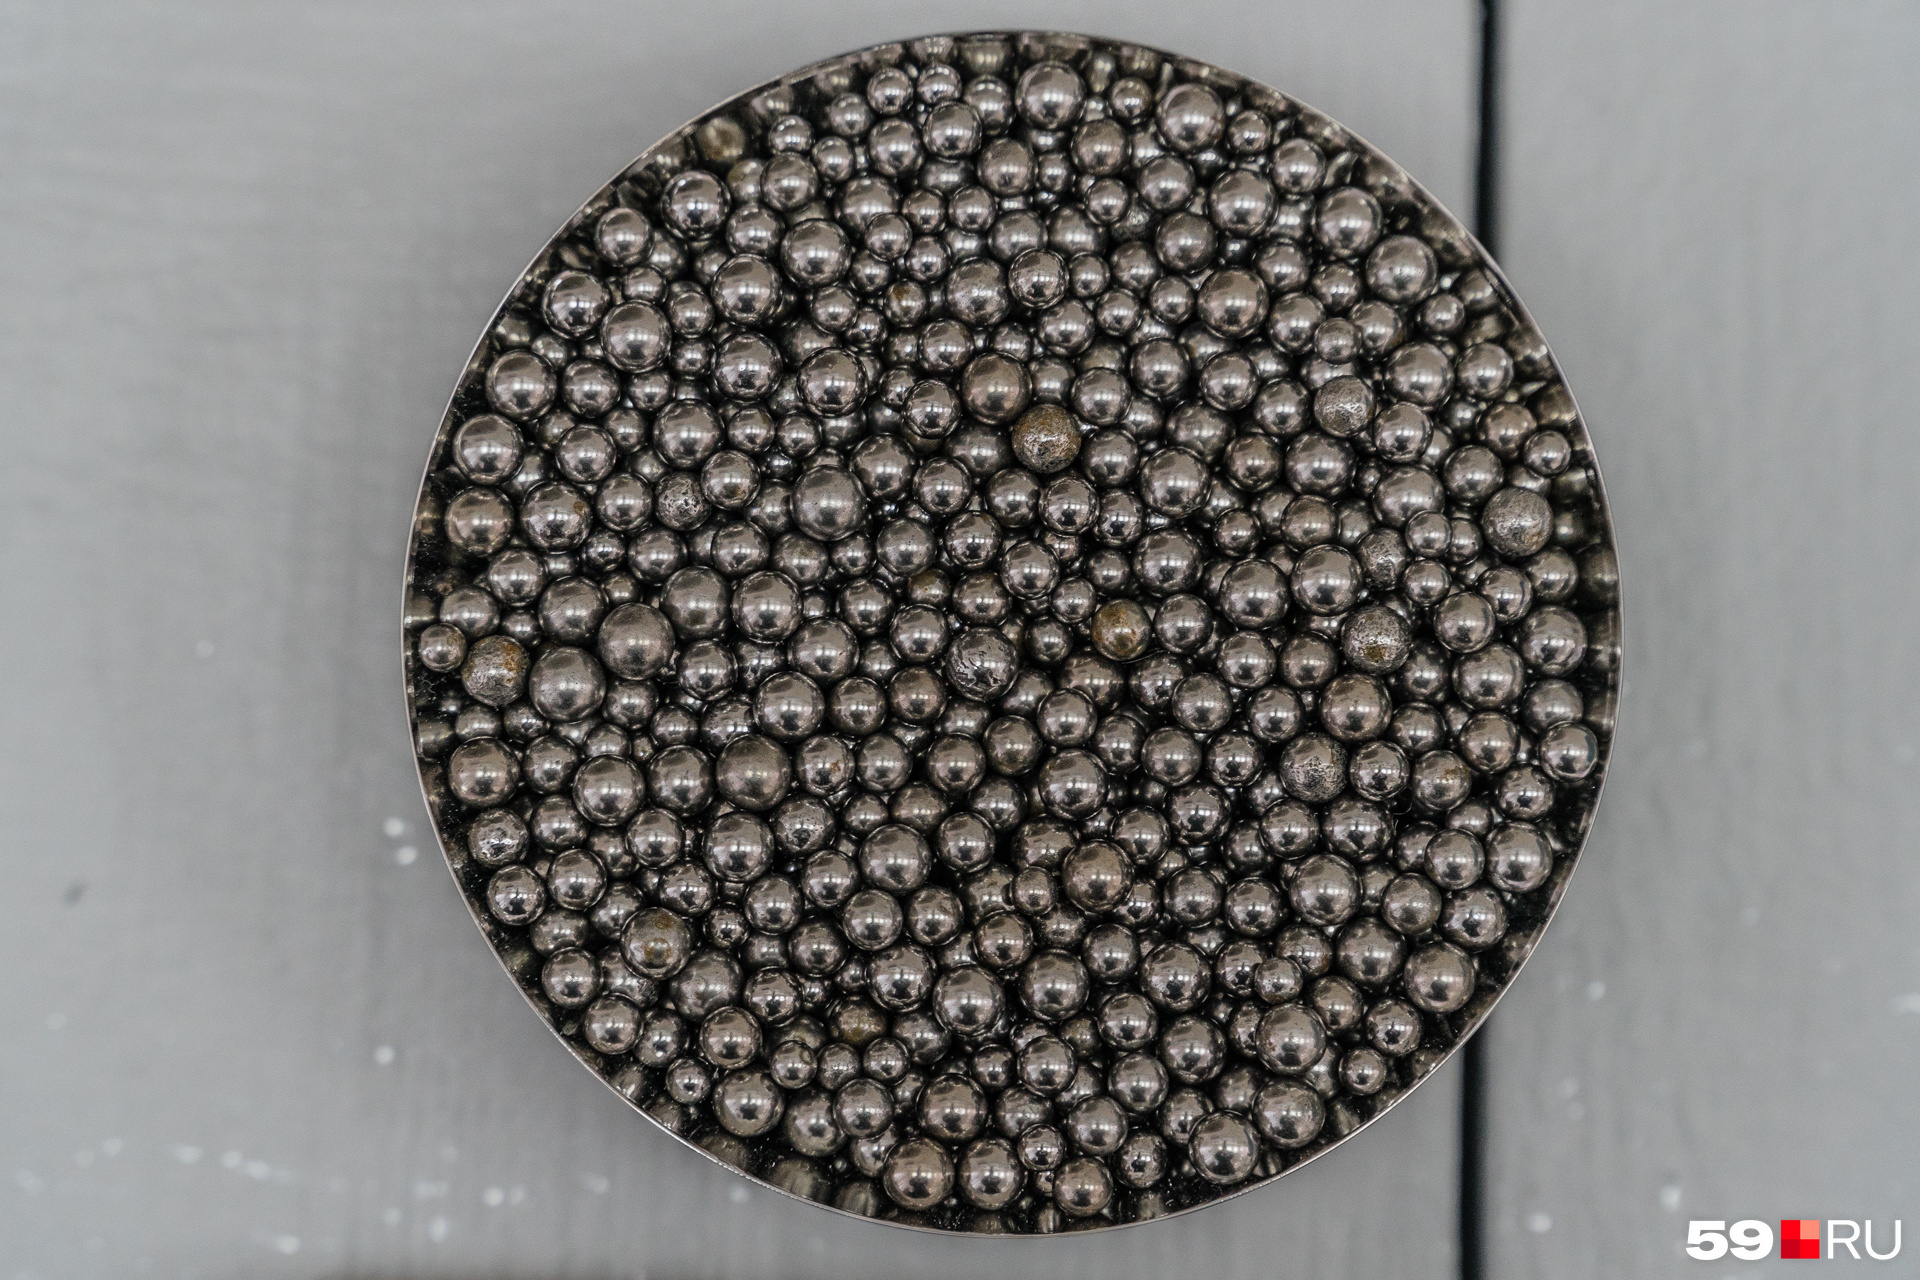 Металлические шарики делают столовые приборы блестящими